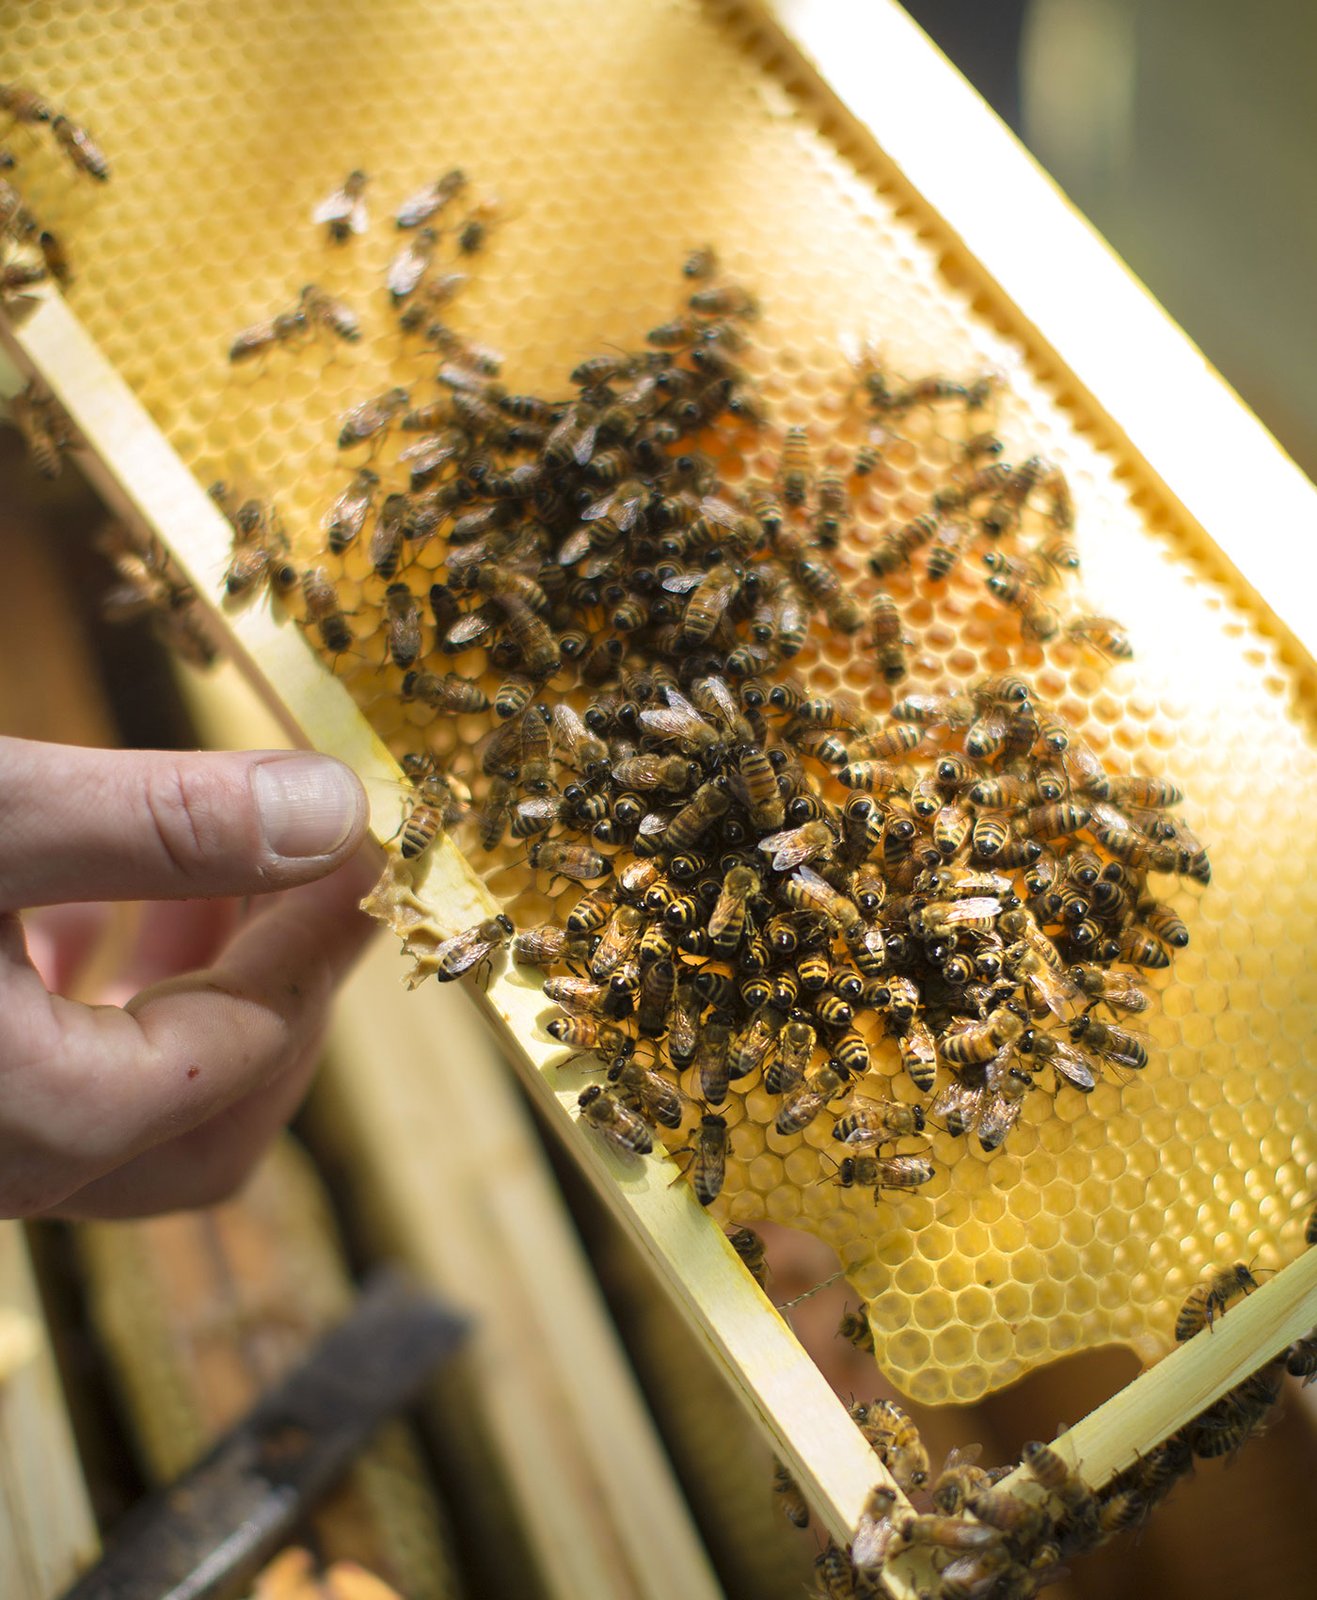 Un apiculteur présente un rayon issu d'un rucher